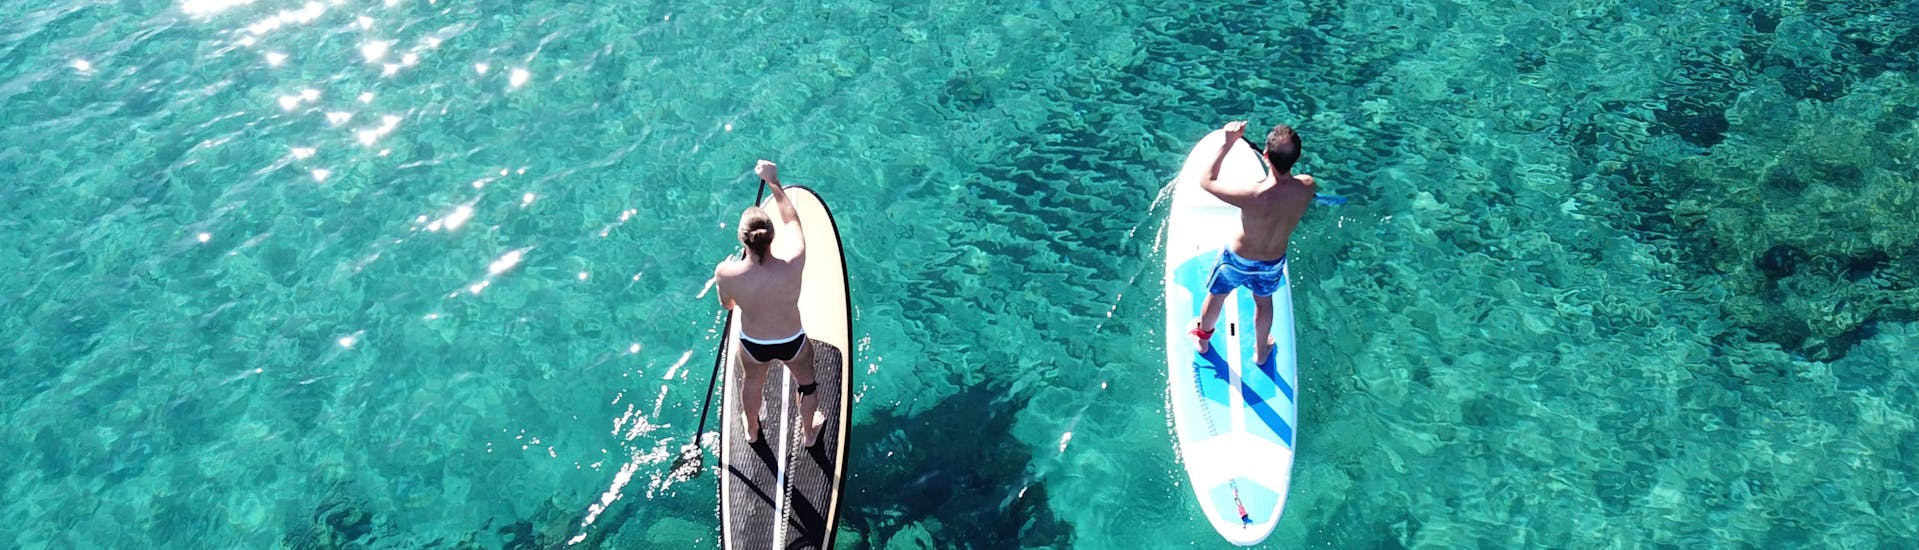 Une jeune femme fait du surf dans la destination de vacances Ibiza.